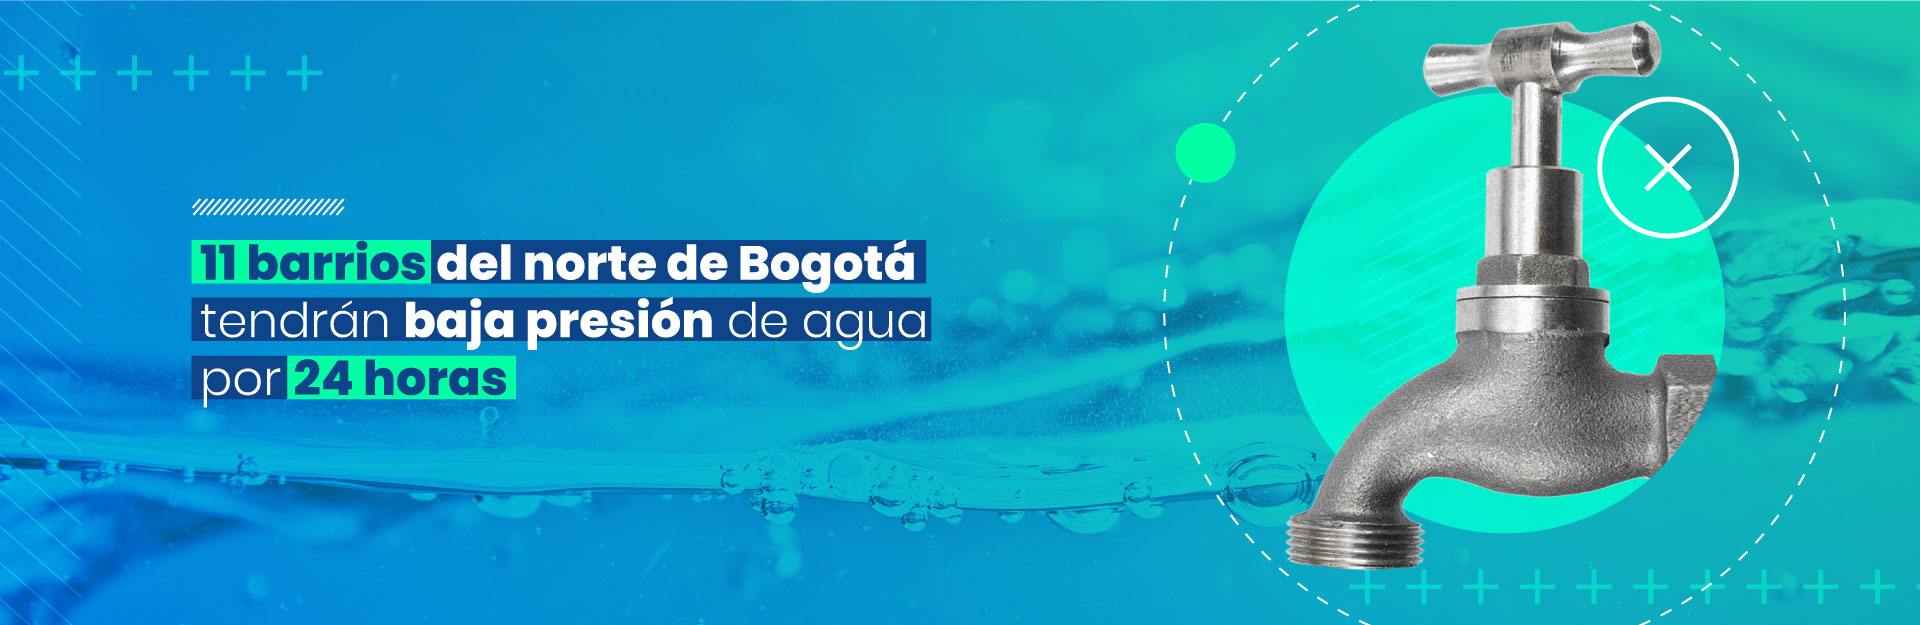 11 barrios del norte de Bogotá tendrán baja presión de agua por 24 horas